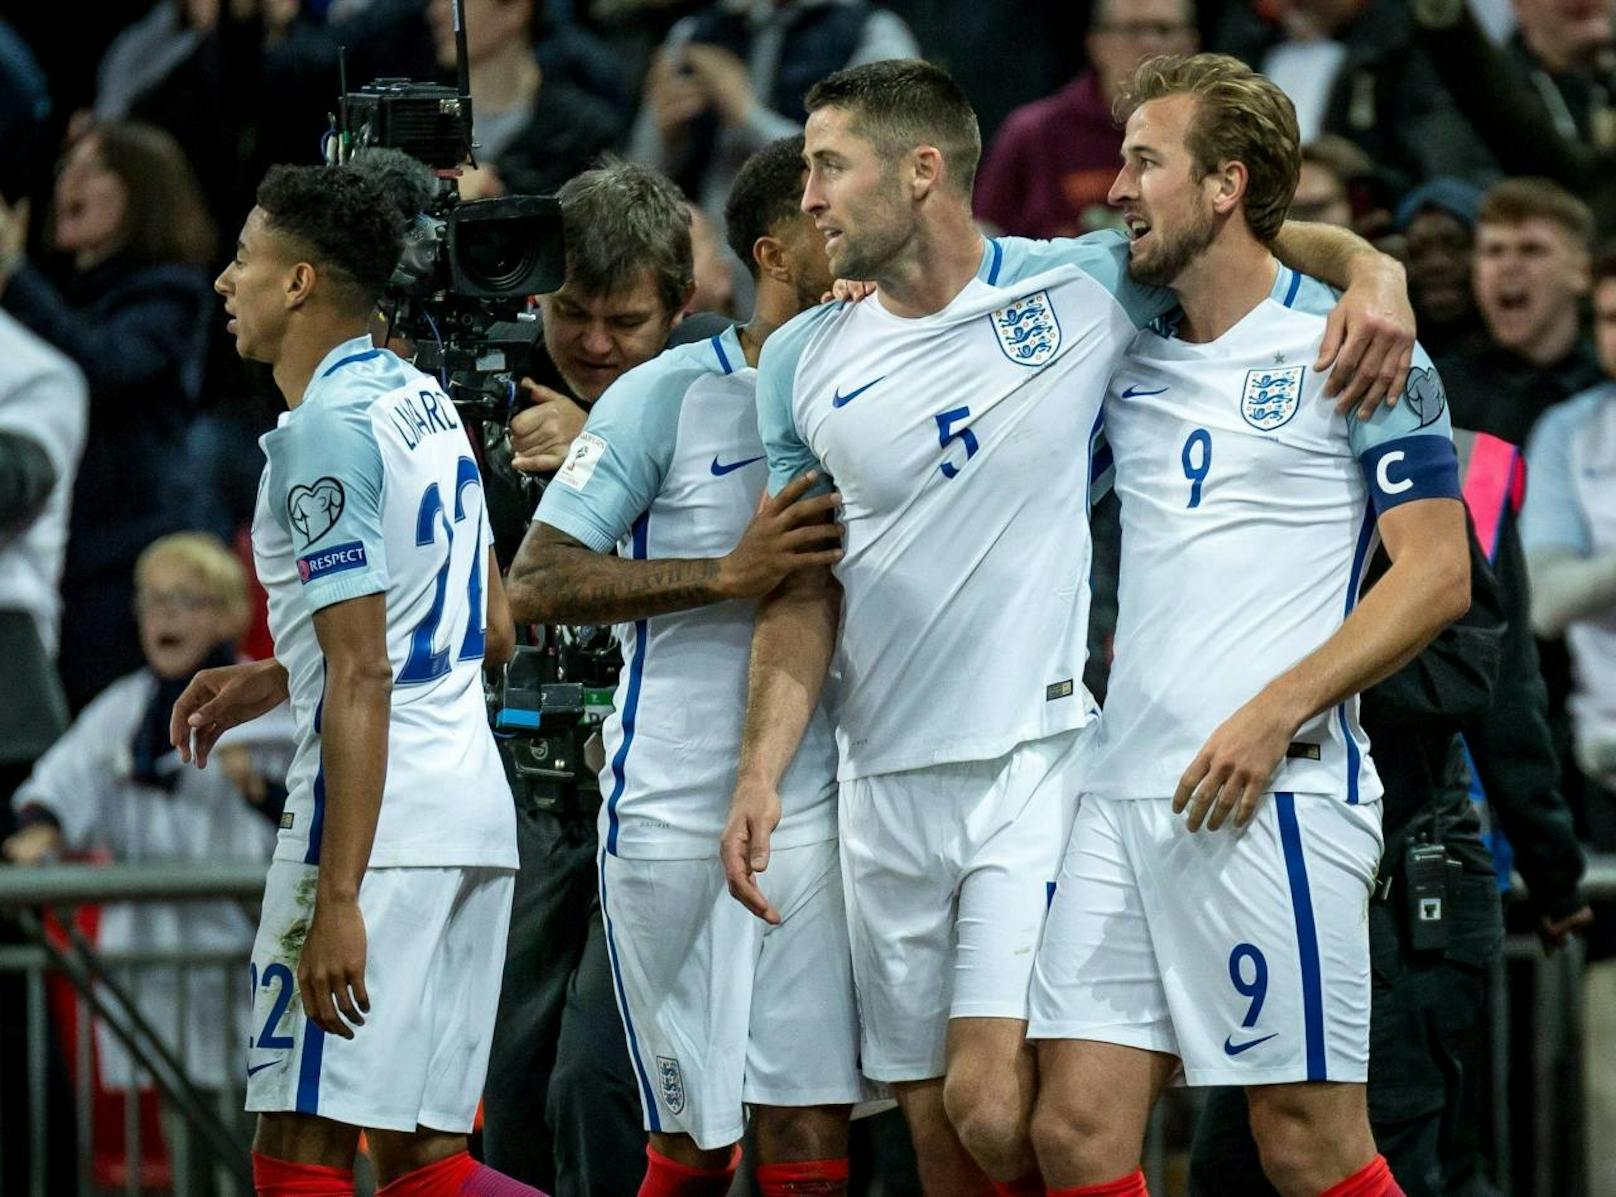 England: Die Three Lions wollen endlich ihren zweiten WM-Titel nach 1966 einfahren. Es ist die insgesamt 15. WM-Teilnahme